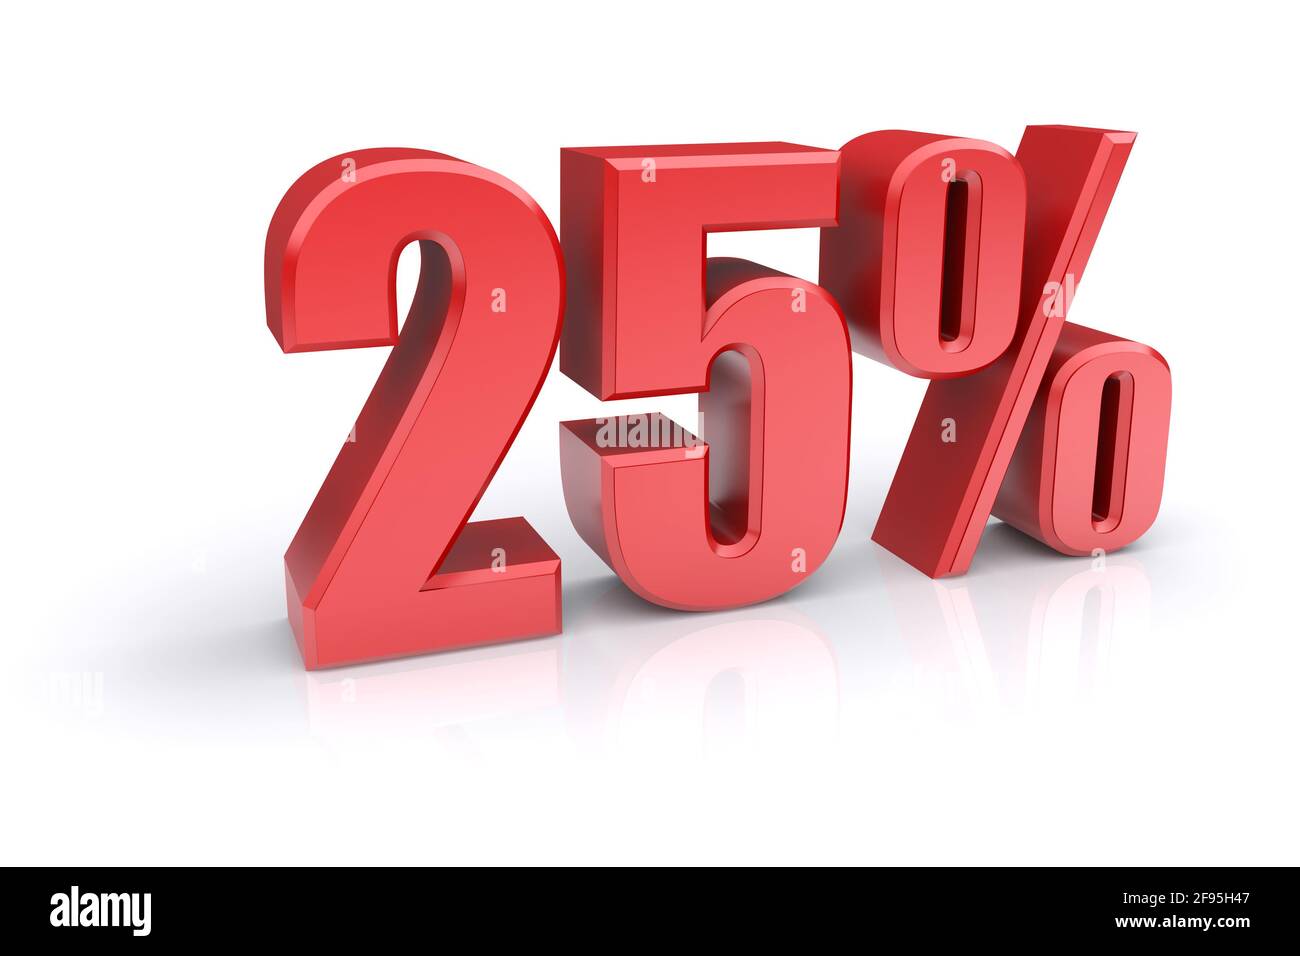 Icona rossa del tasso percentuale del 25% su sfondo bianco. immagine 3d rappresentata Foto Stock